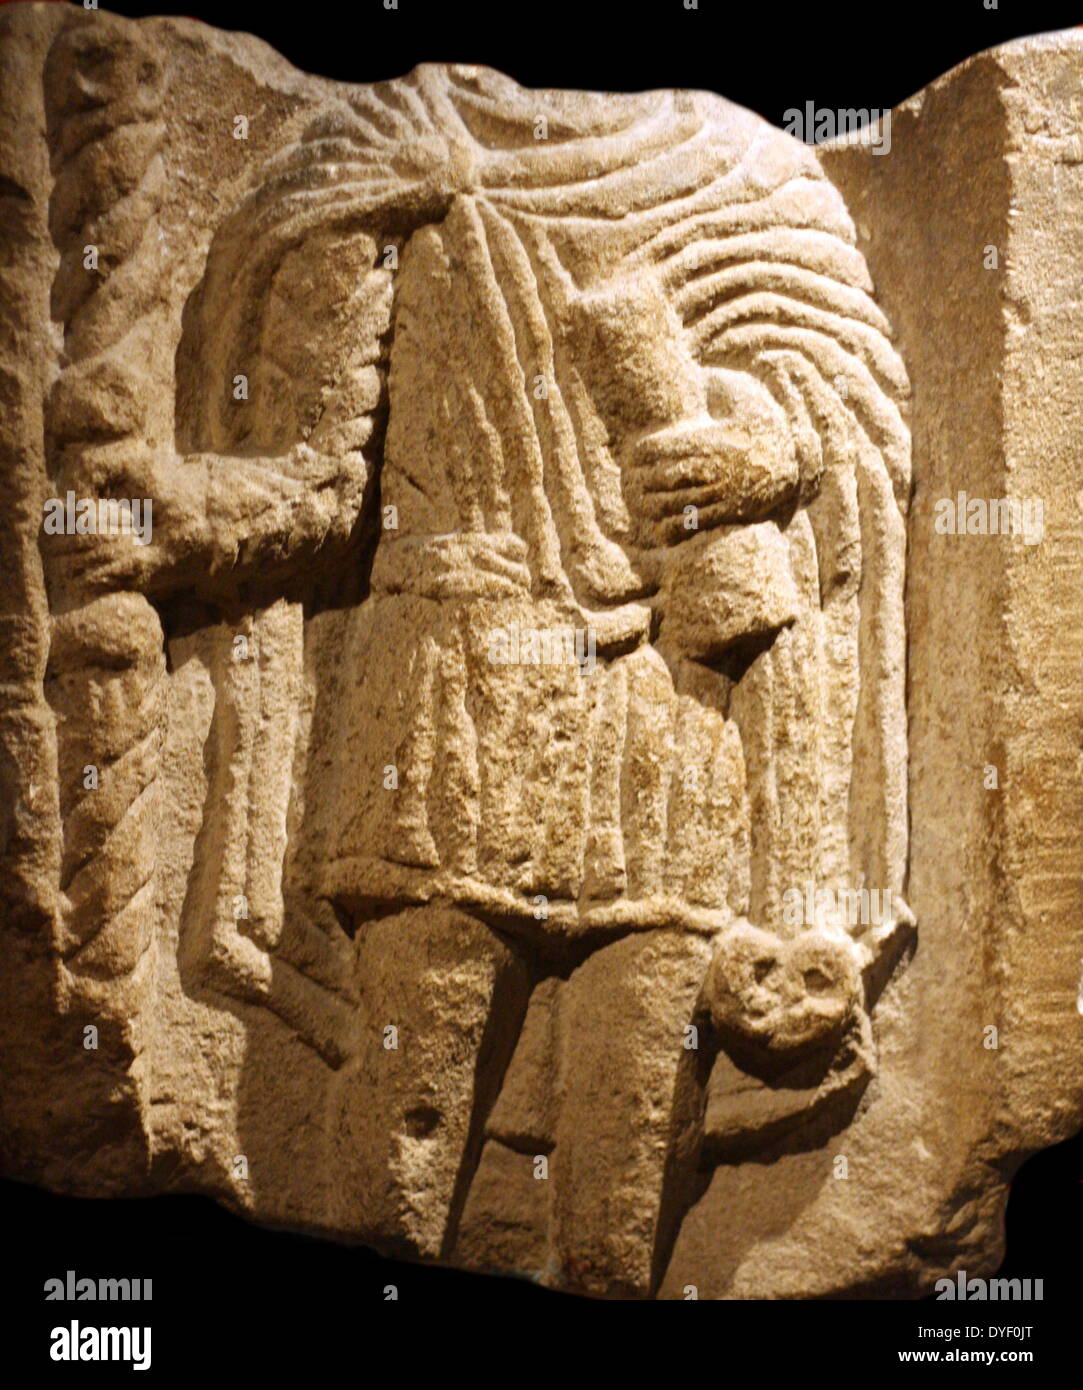 Immagine in rilievo di un uomo colto, trovati nelle terme romane. Circa 1a-3rd secolo D.C. Rappresentato con una rotellina di scorrimento per indicare che egli è educato. La testa è assente dal deterioramento. Foto Stock